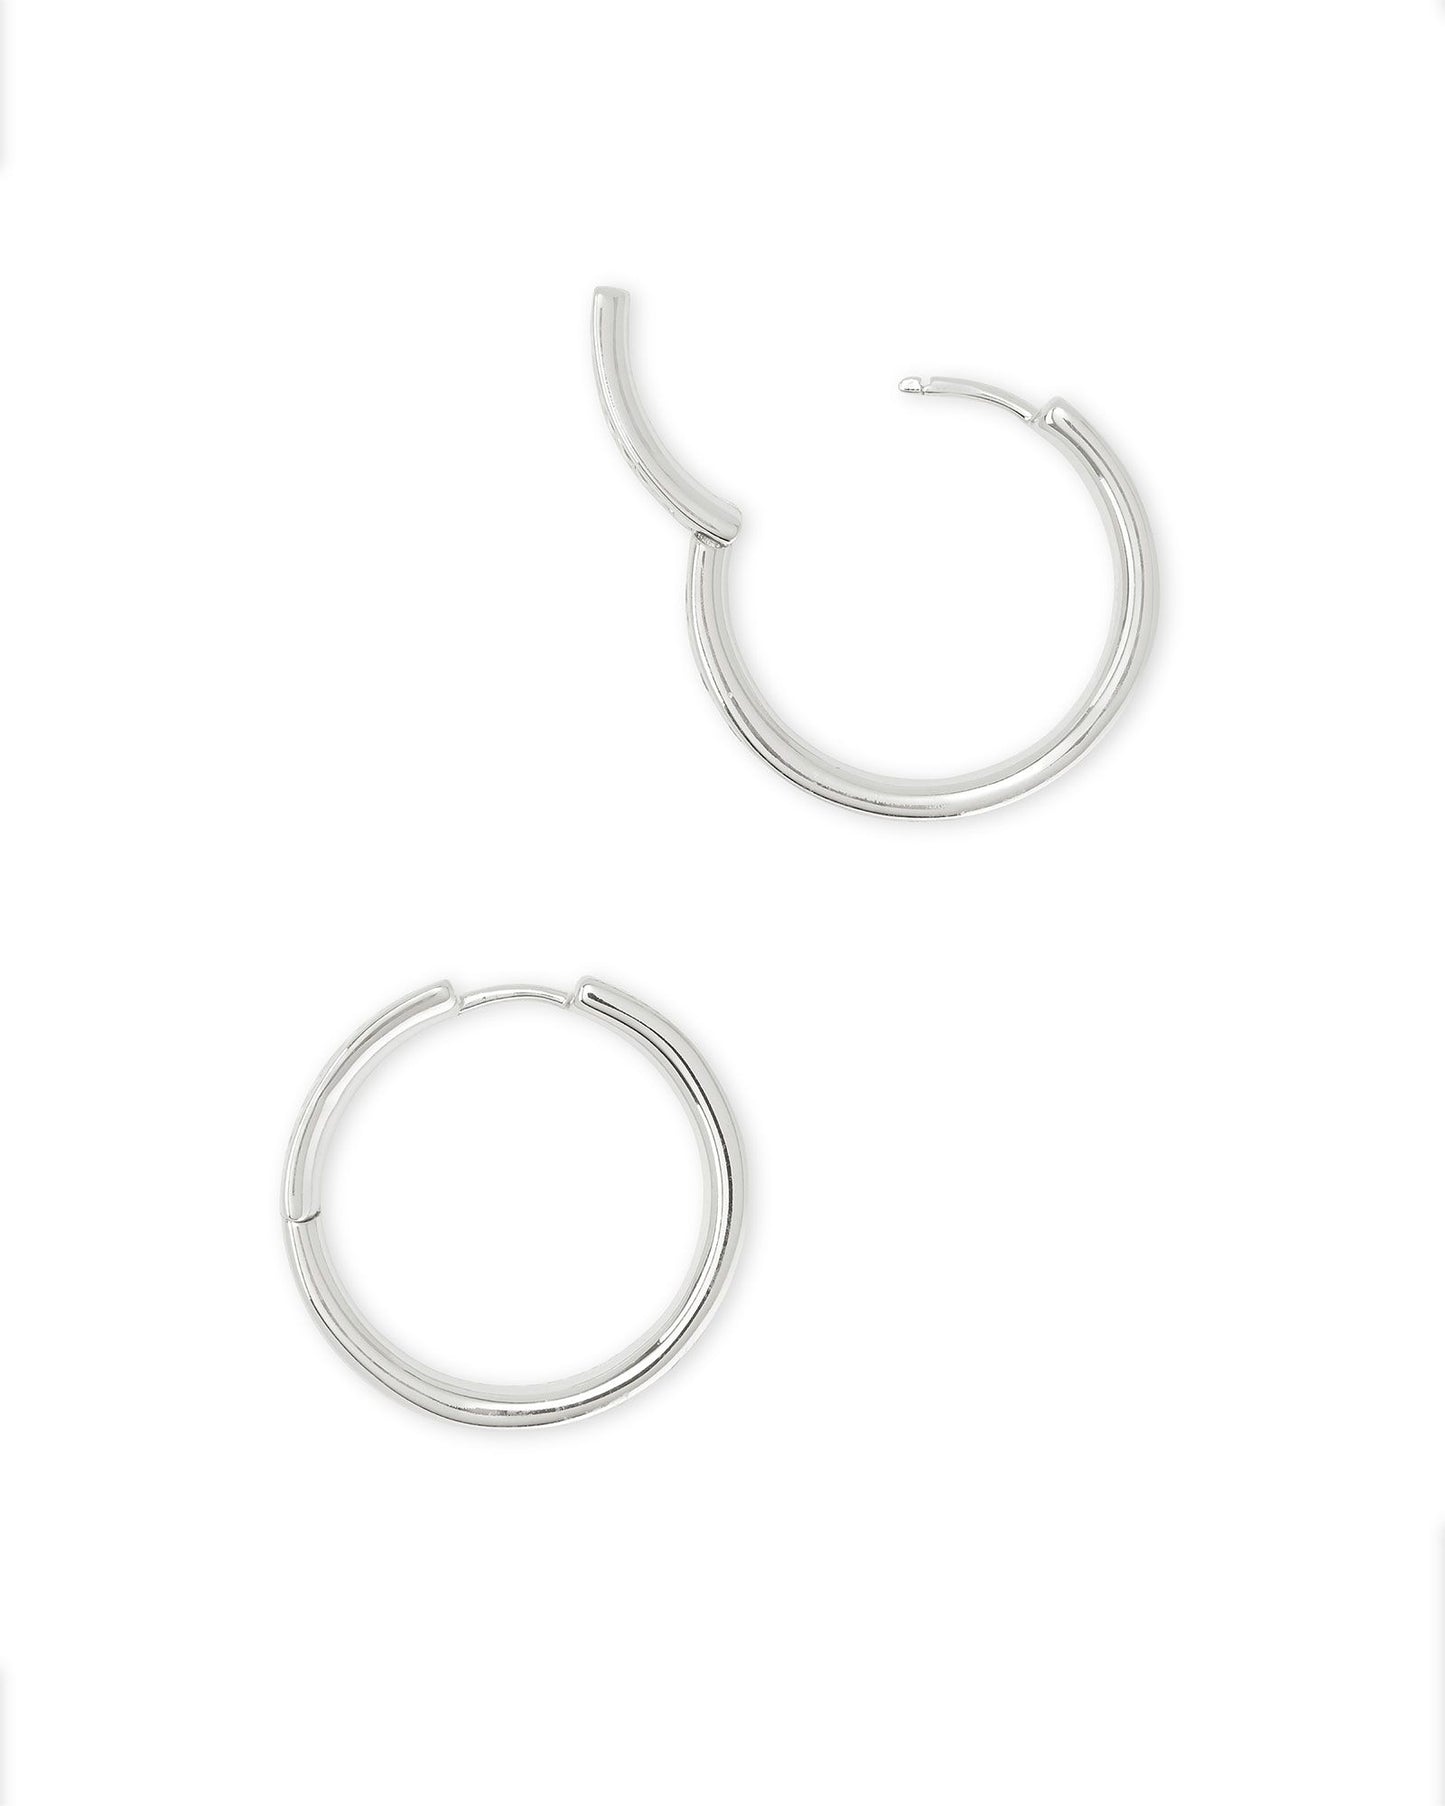 Jack Silver Hoop Earrings In Charcoal Gray Crystal